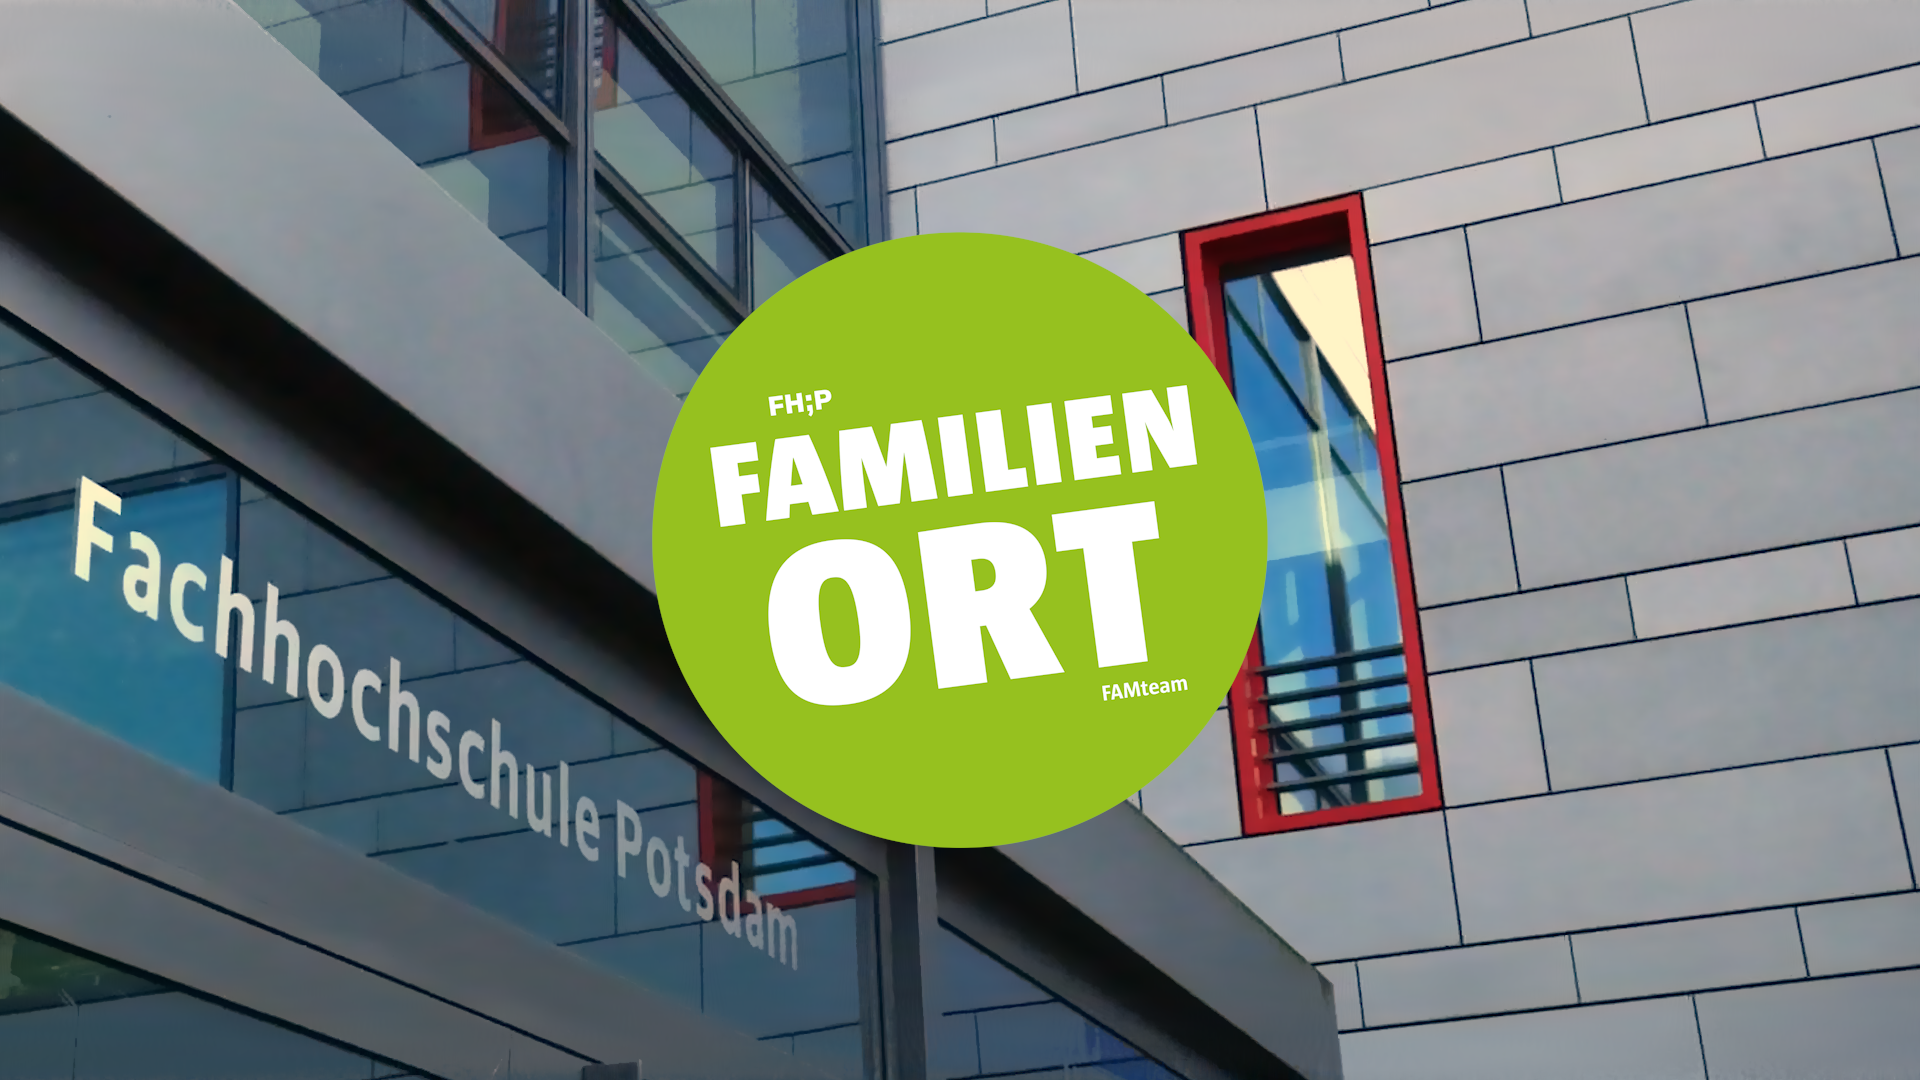 Keyvisual der Landingpage "Fachhochschule Potsdam – Ein Ort für Familien"